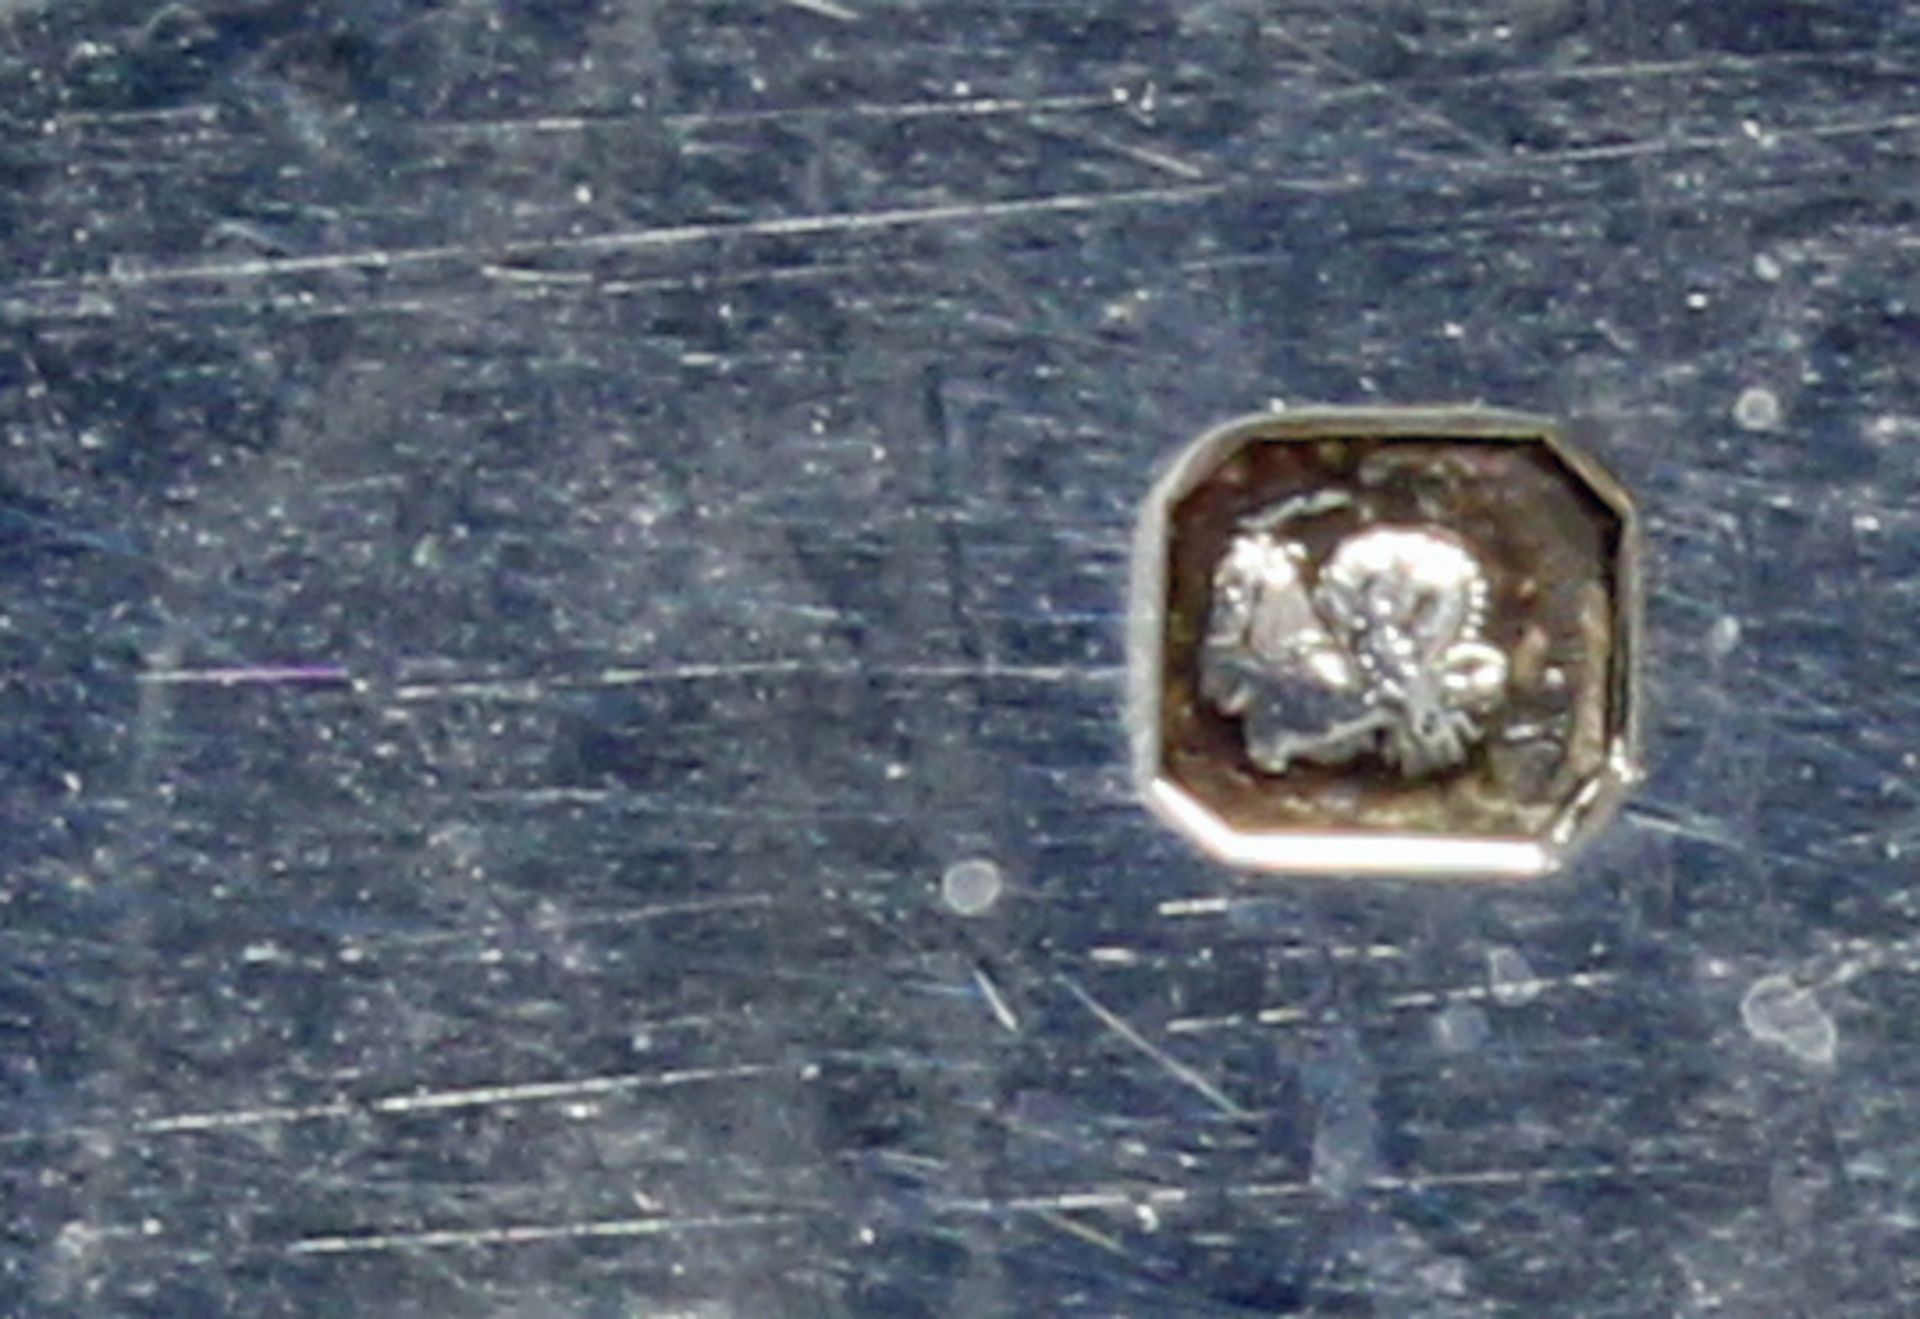 Tablett, Silber 925, Frankreich, rechteckig, Reliefdekor mit zechenden Bauern, profilierter Rand, - Bild 2 aus 2